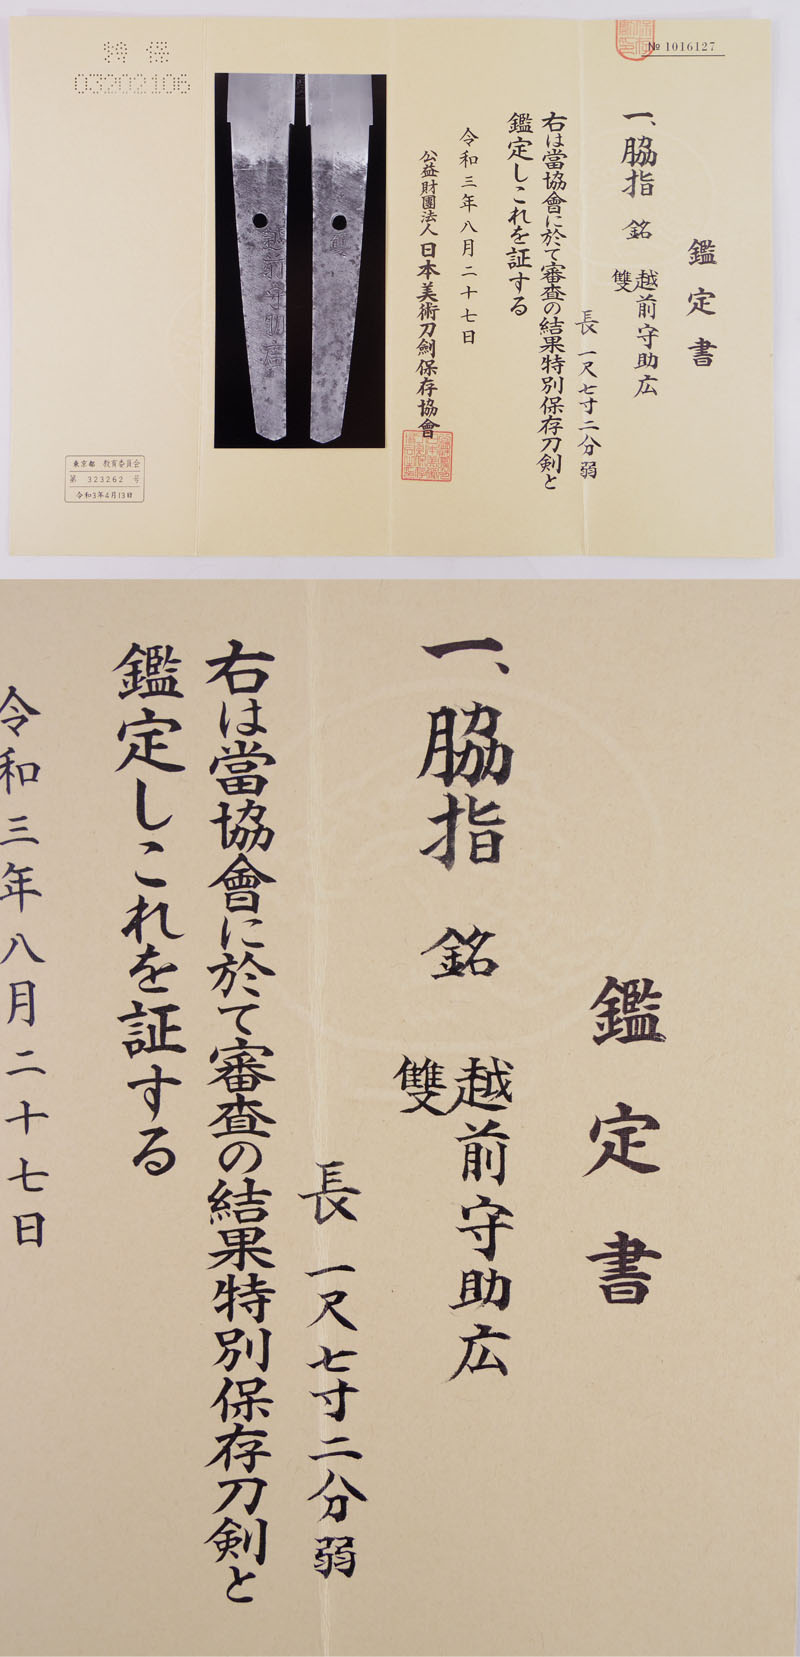 脇差　越前守助広 雙(二代助広) (津田越前守助広) (新刀最上作) (業物) Picture of Certificate